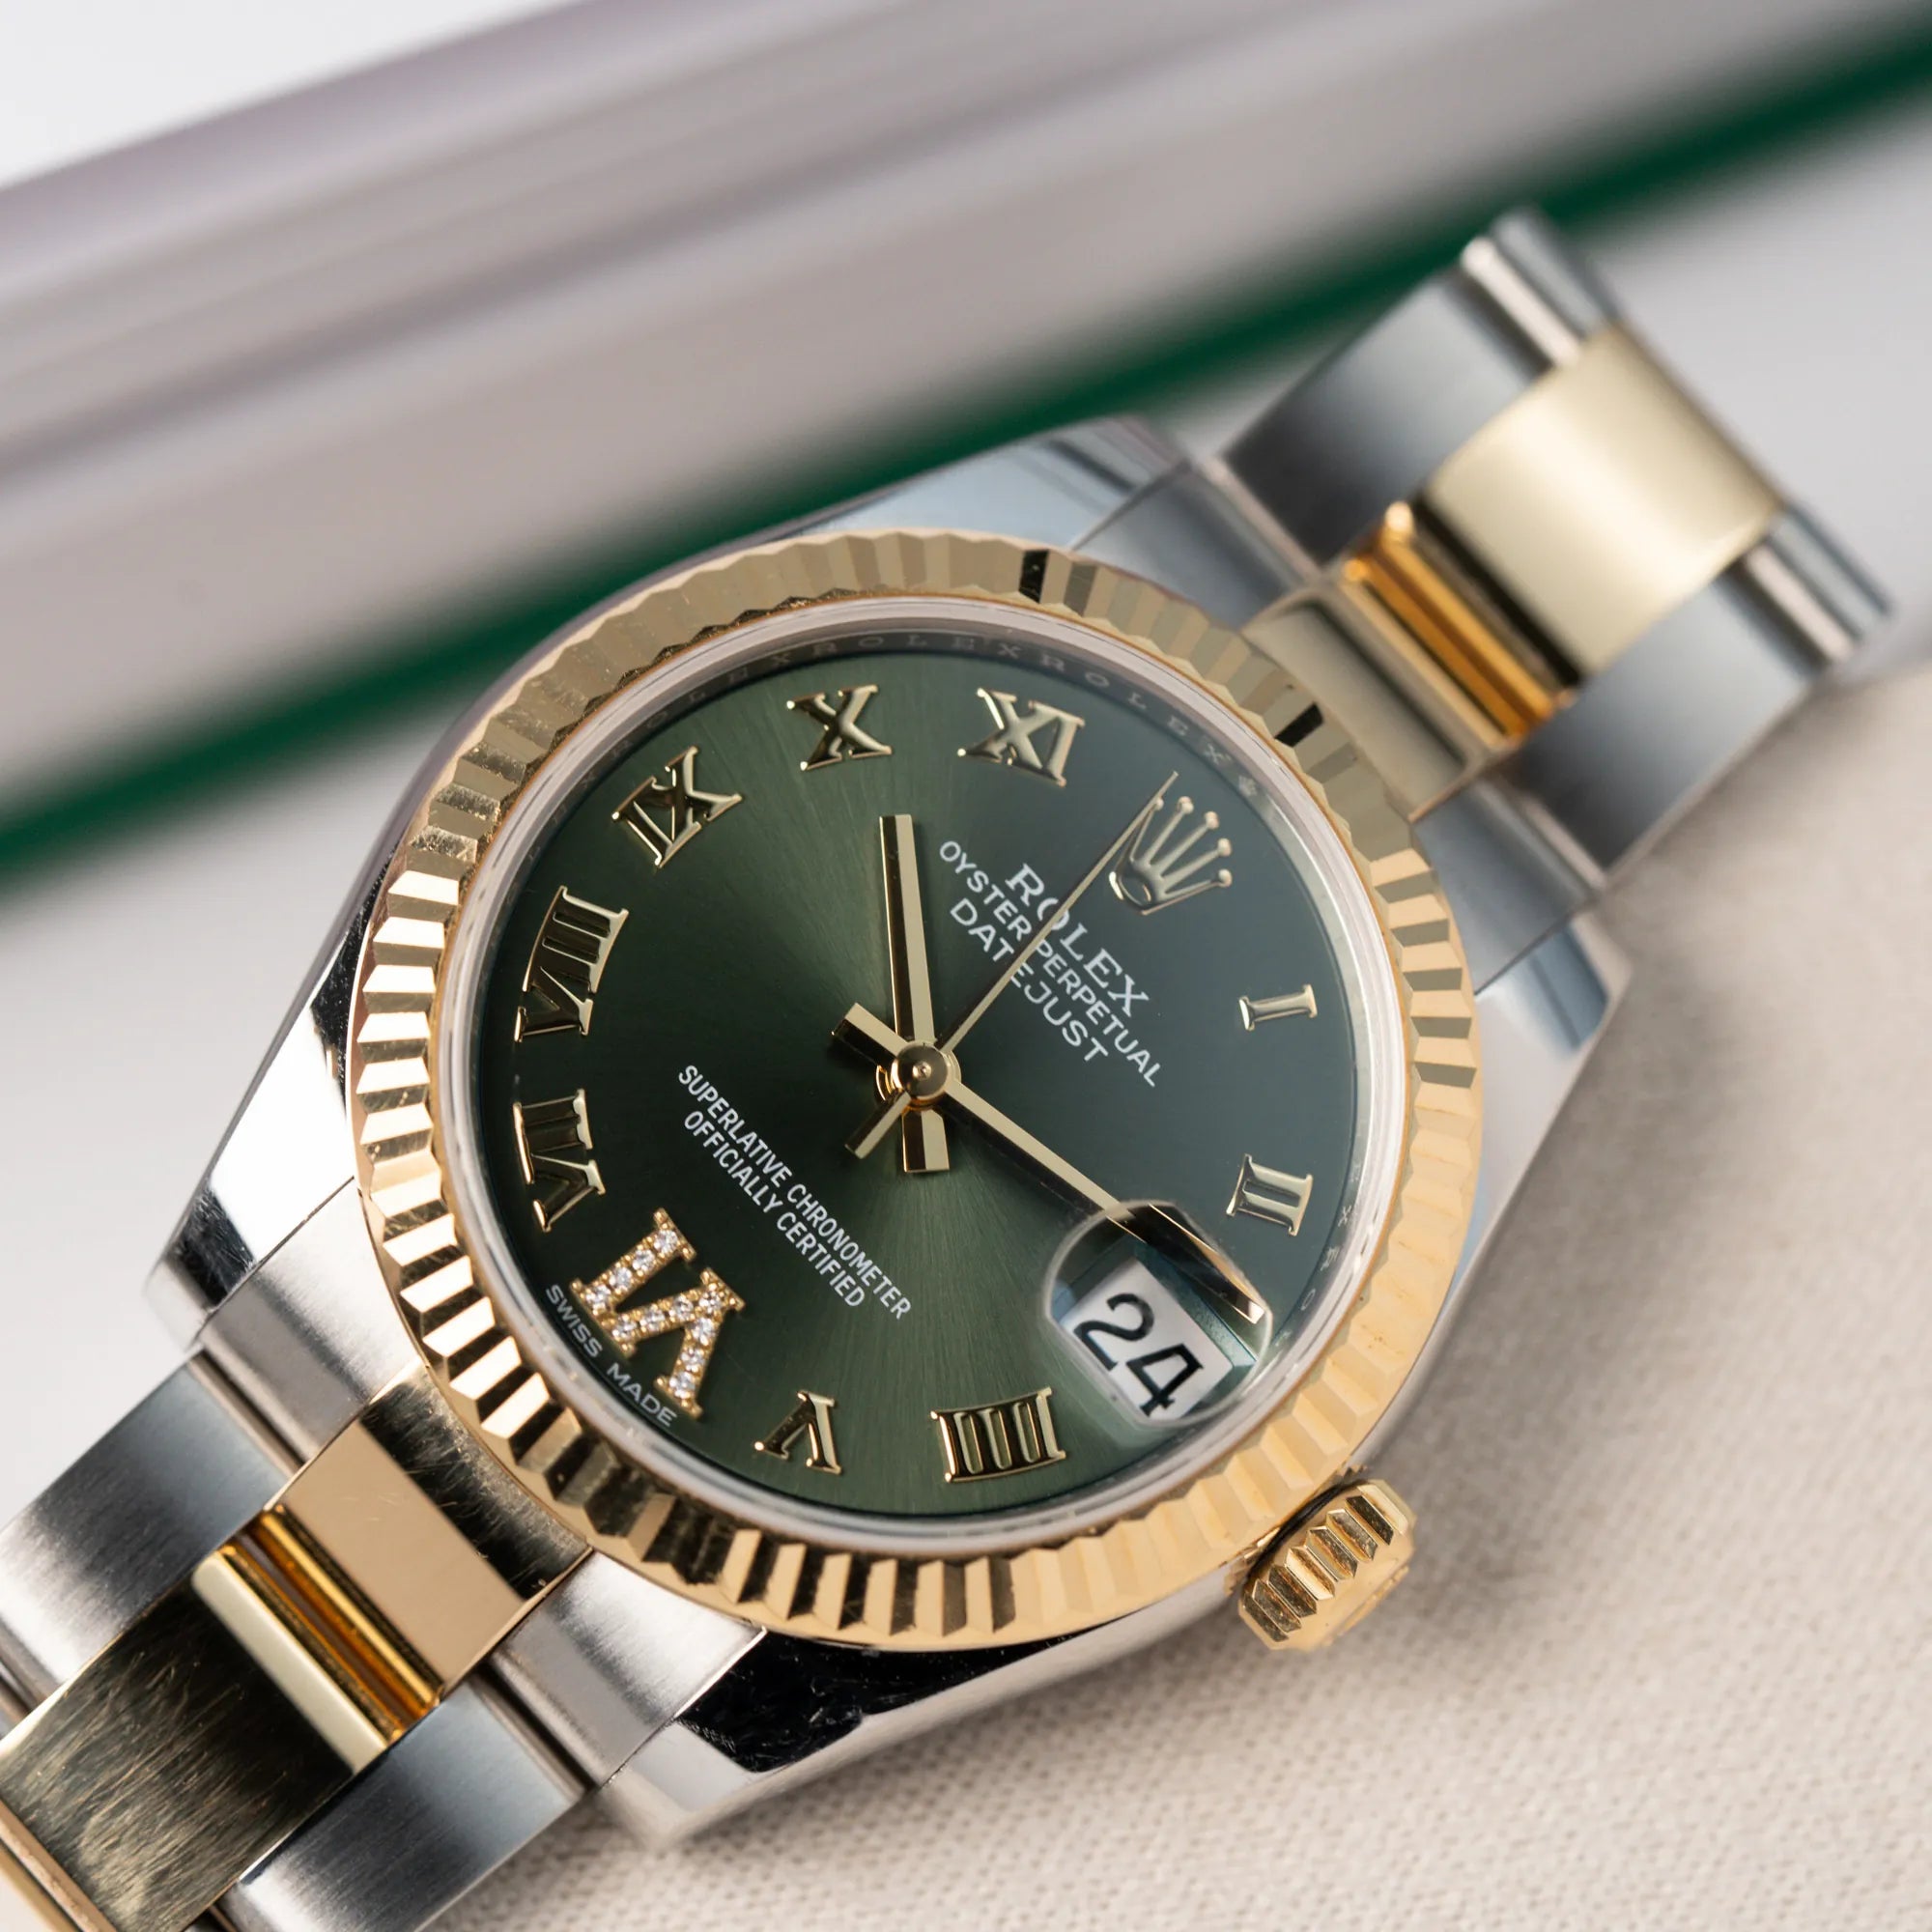 Produktfoto der Rolex Datejust 31 mm für Ladies mit einem oliven Zifferblatt und einem diamantbesetzten Index